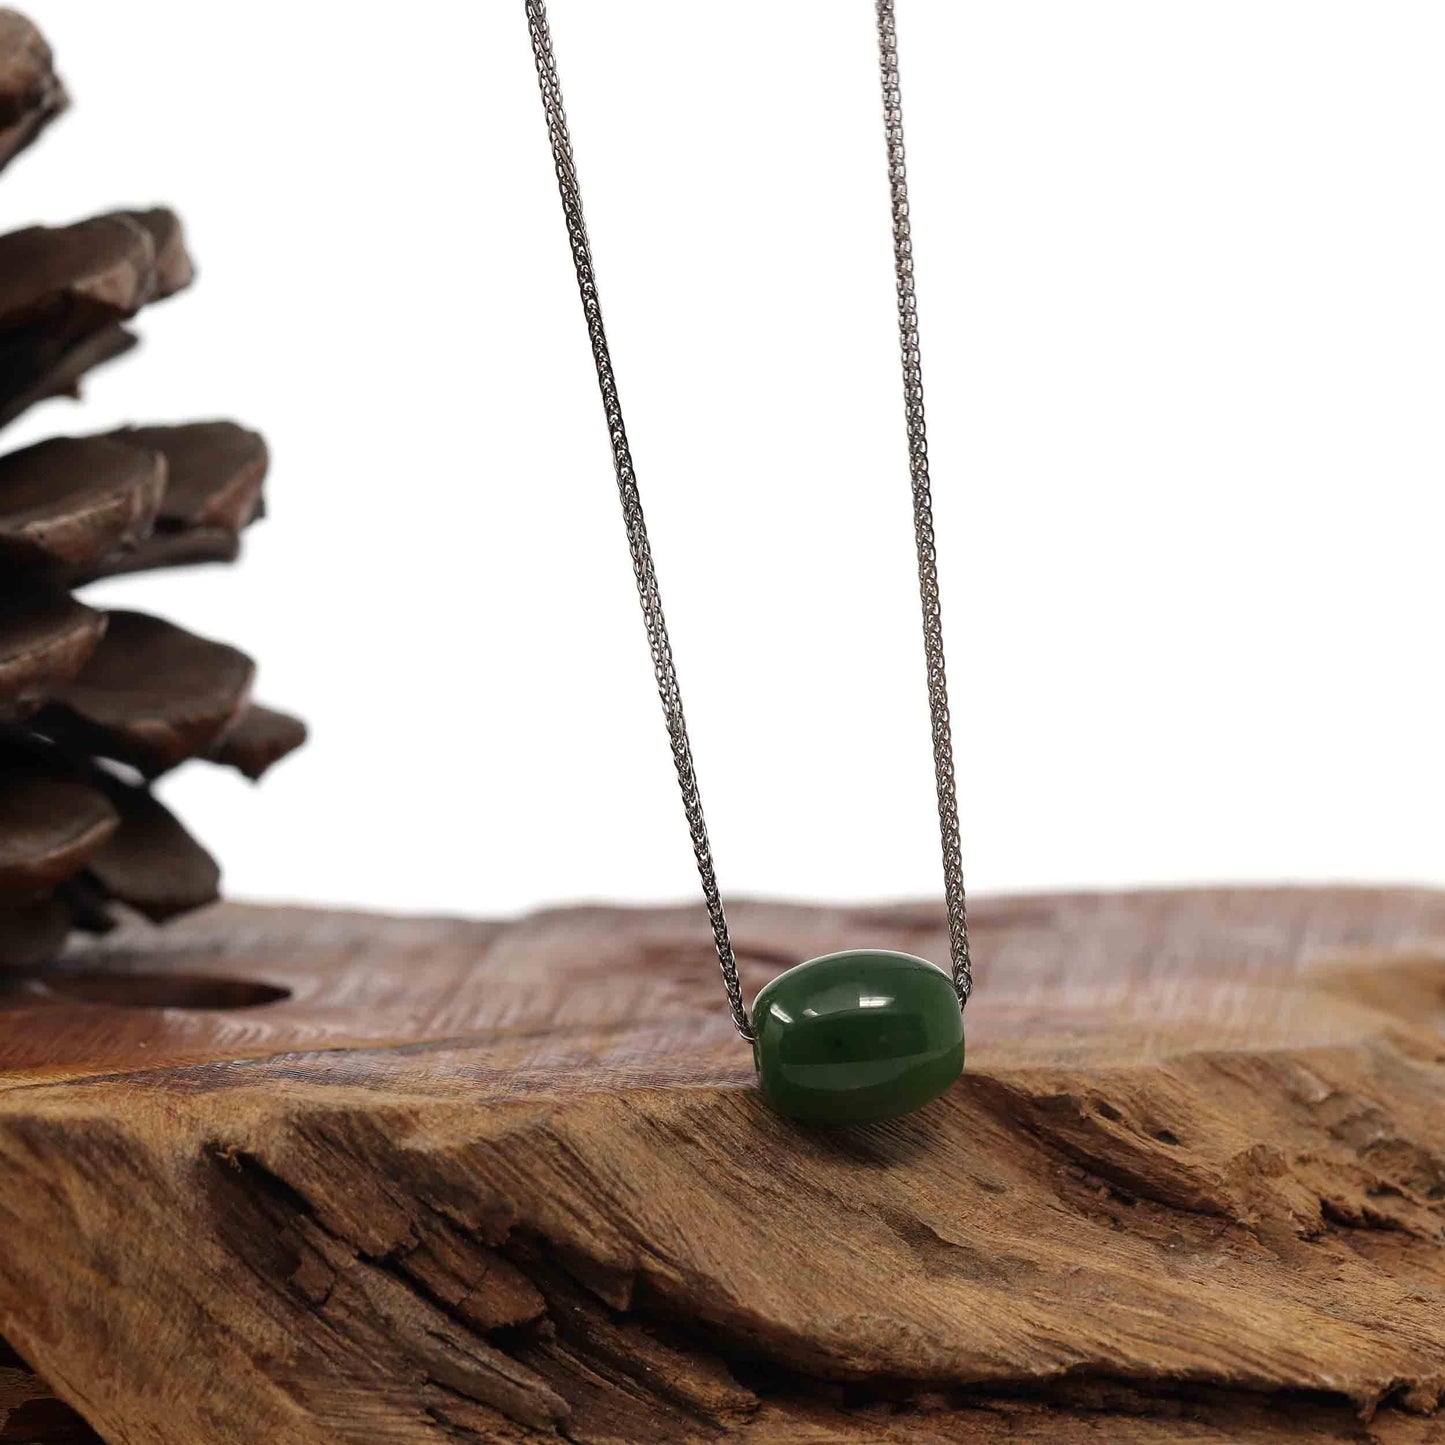 RealJade® Co. RealJade® Co. "Good Luck Button" Necklace Nephrite Green Jade Lucky TongTong Pendant Necklace